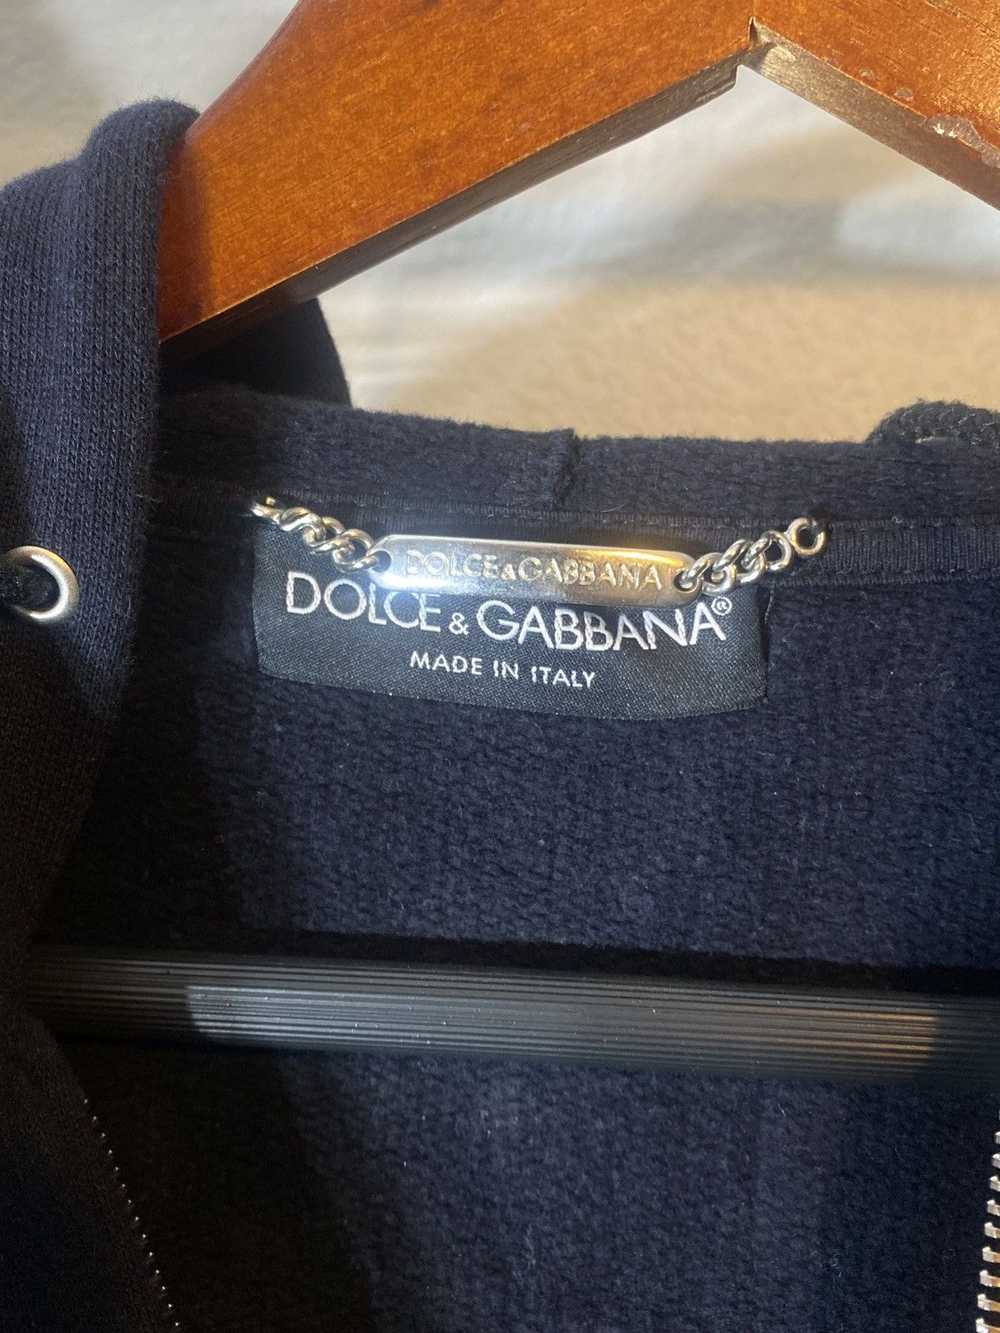 Dolce & Gabbana Dolce and Gabbana zip up - image 2